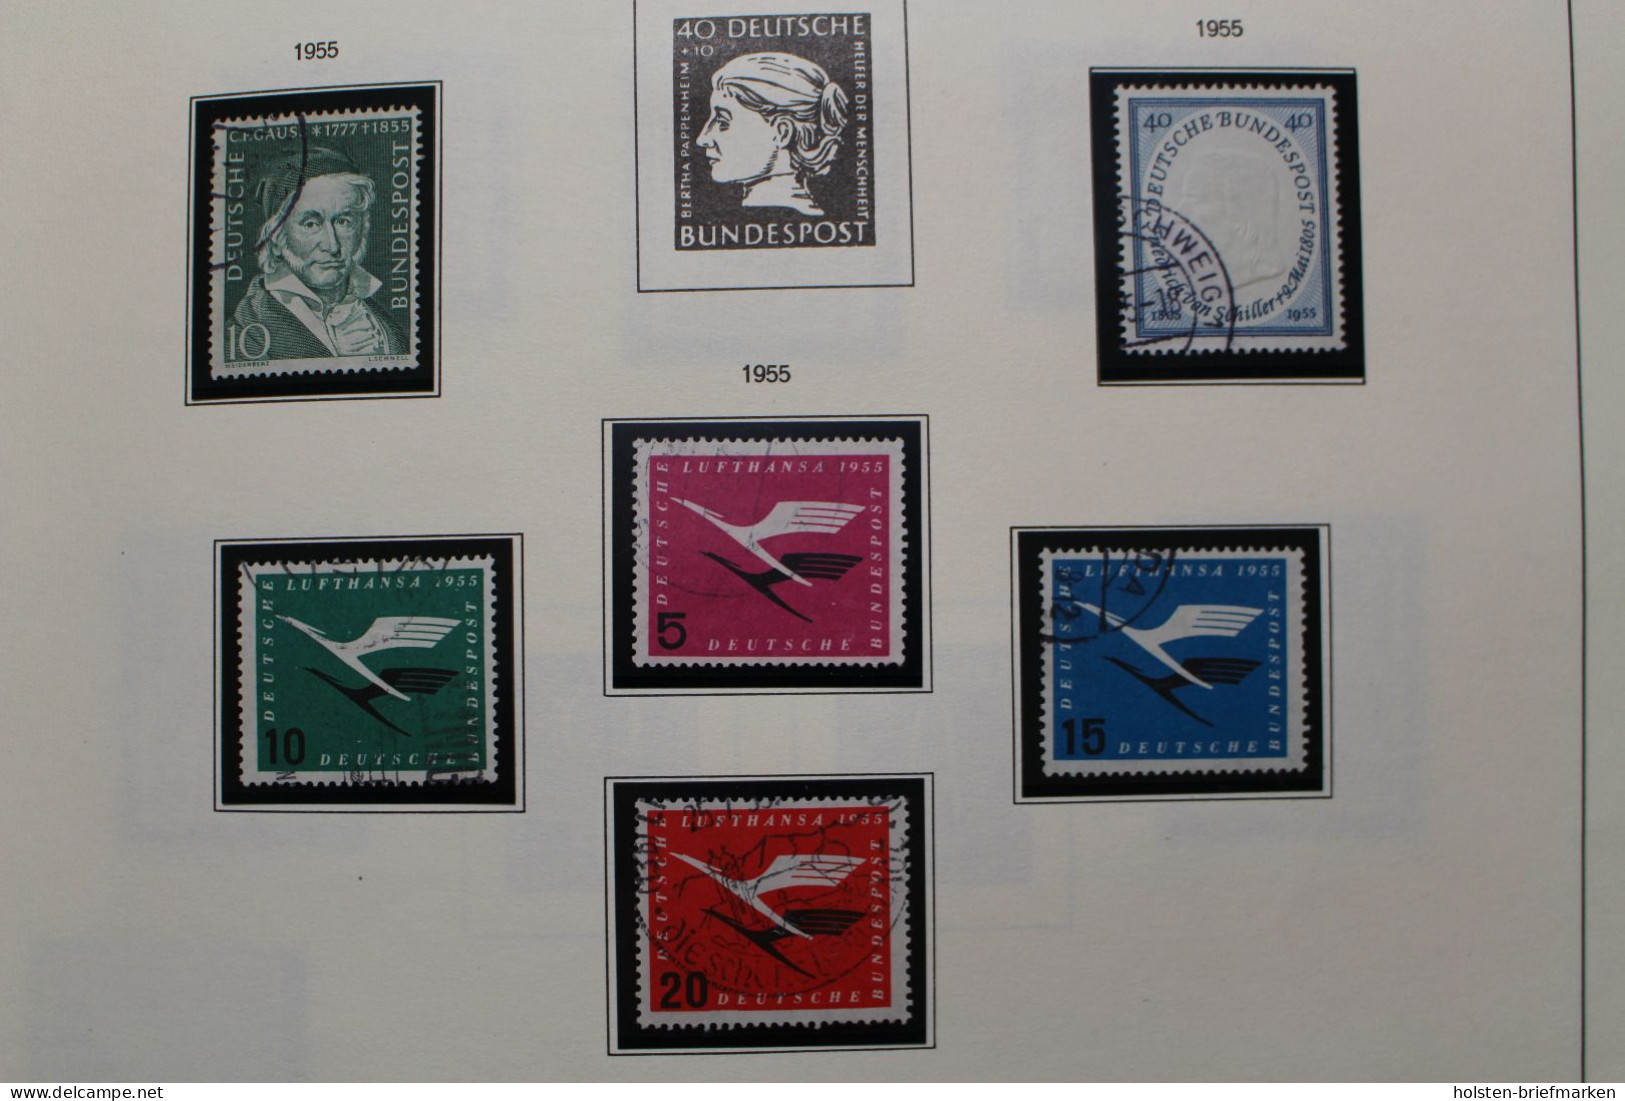 Briefmarken-Posten, viel BRD, Berlin und DDR